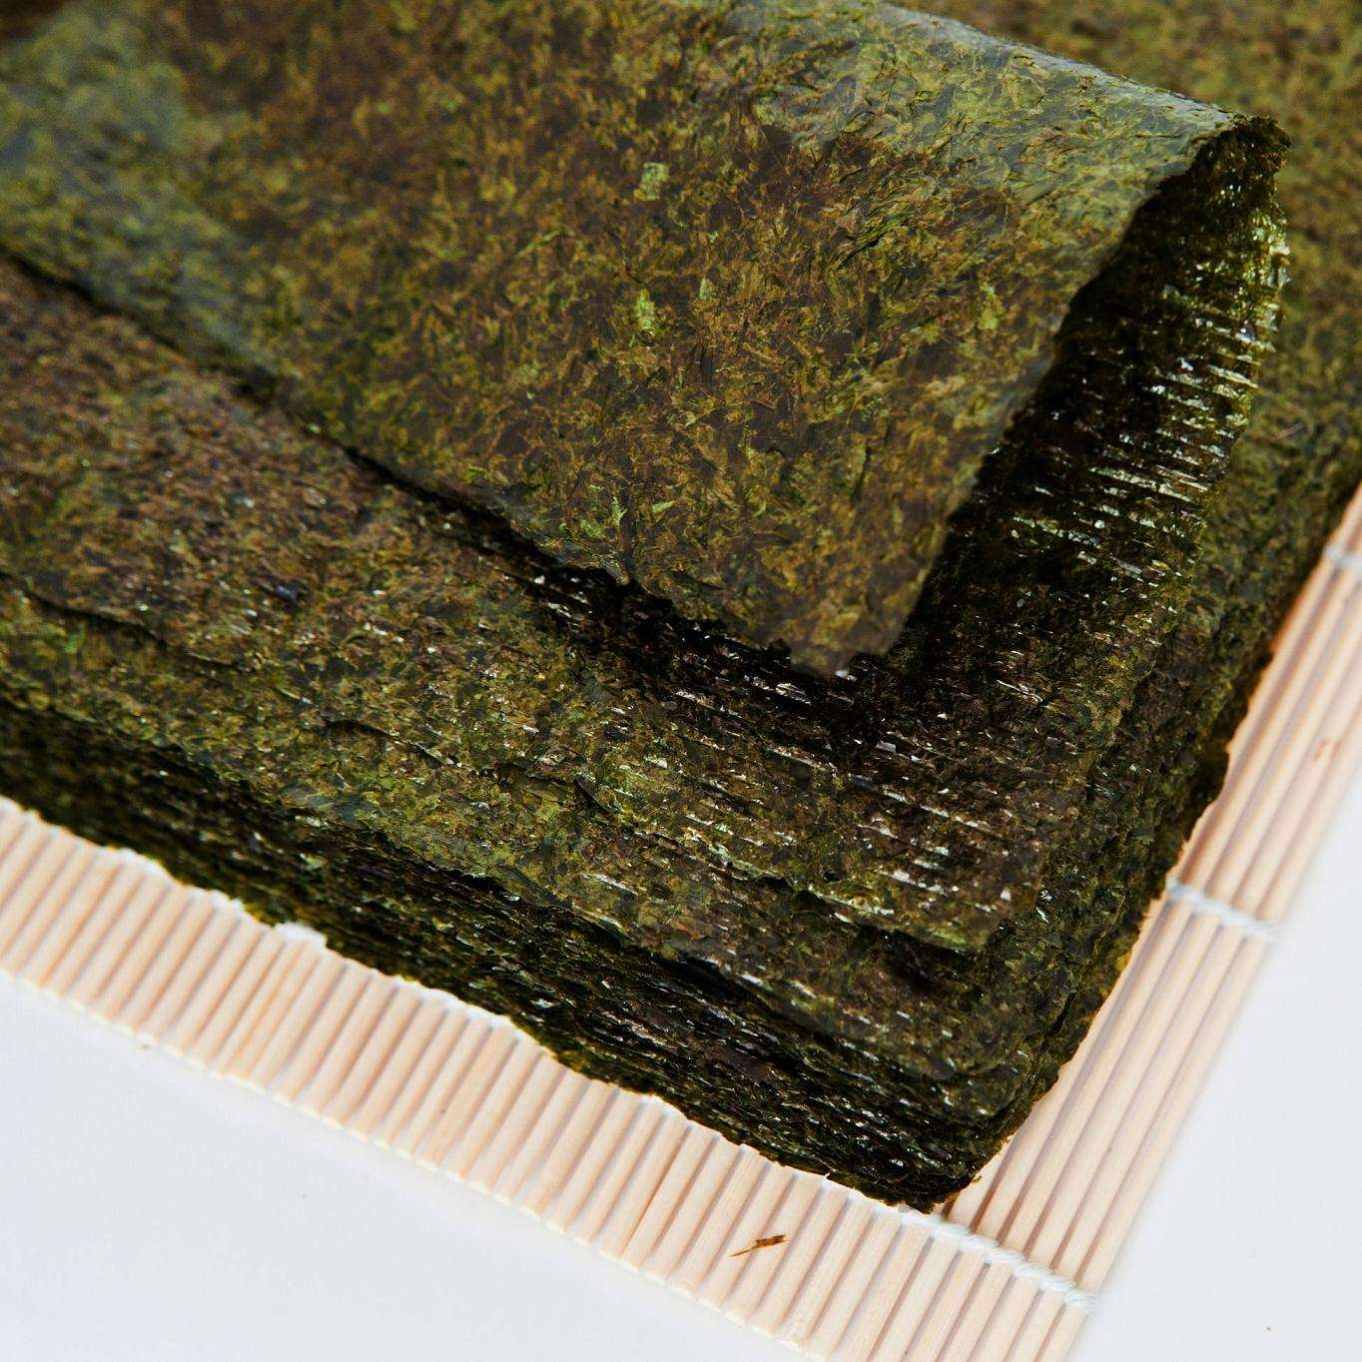 Certified Top Factory Healthy Roasted Seaweed Snack Buckwheat Seaweed Featured Image